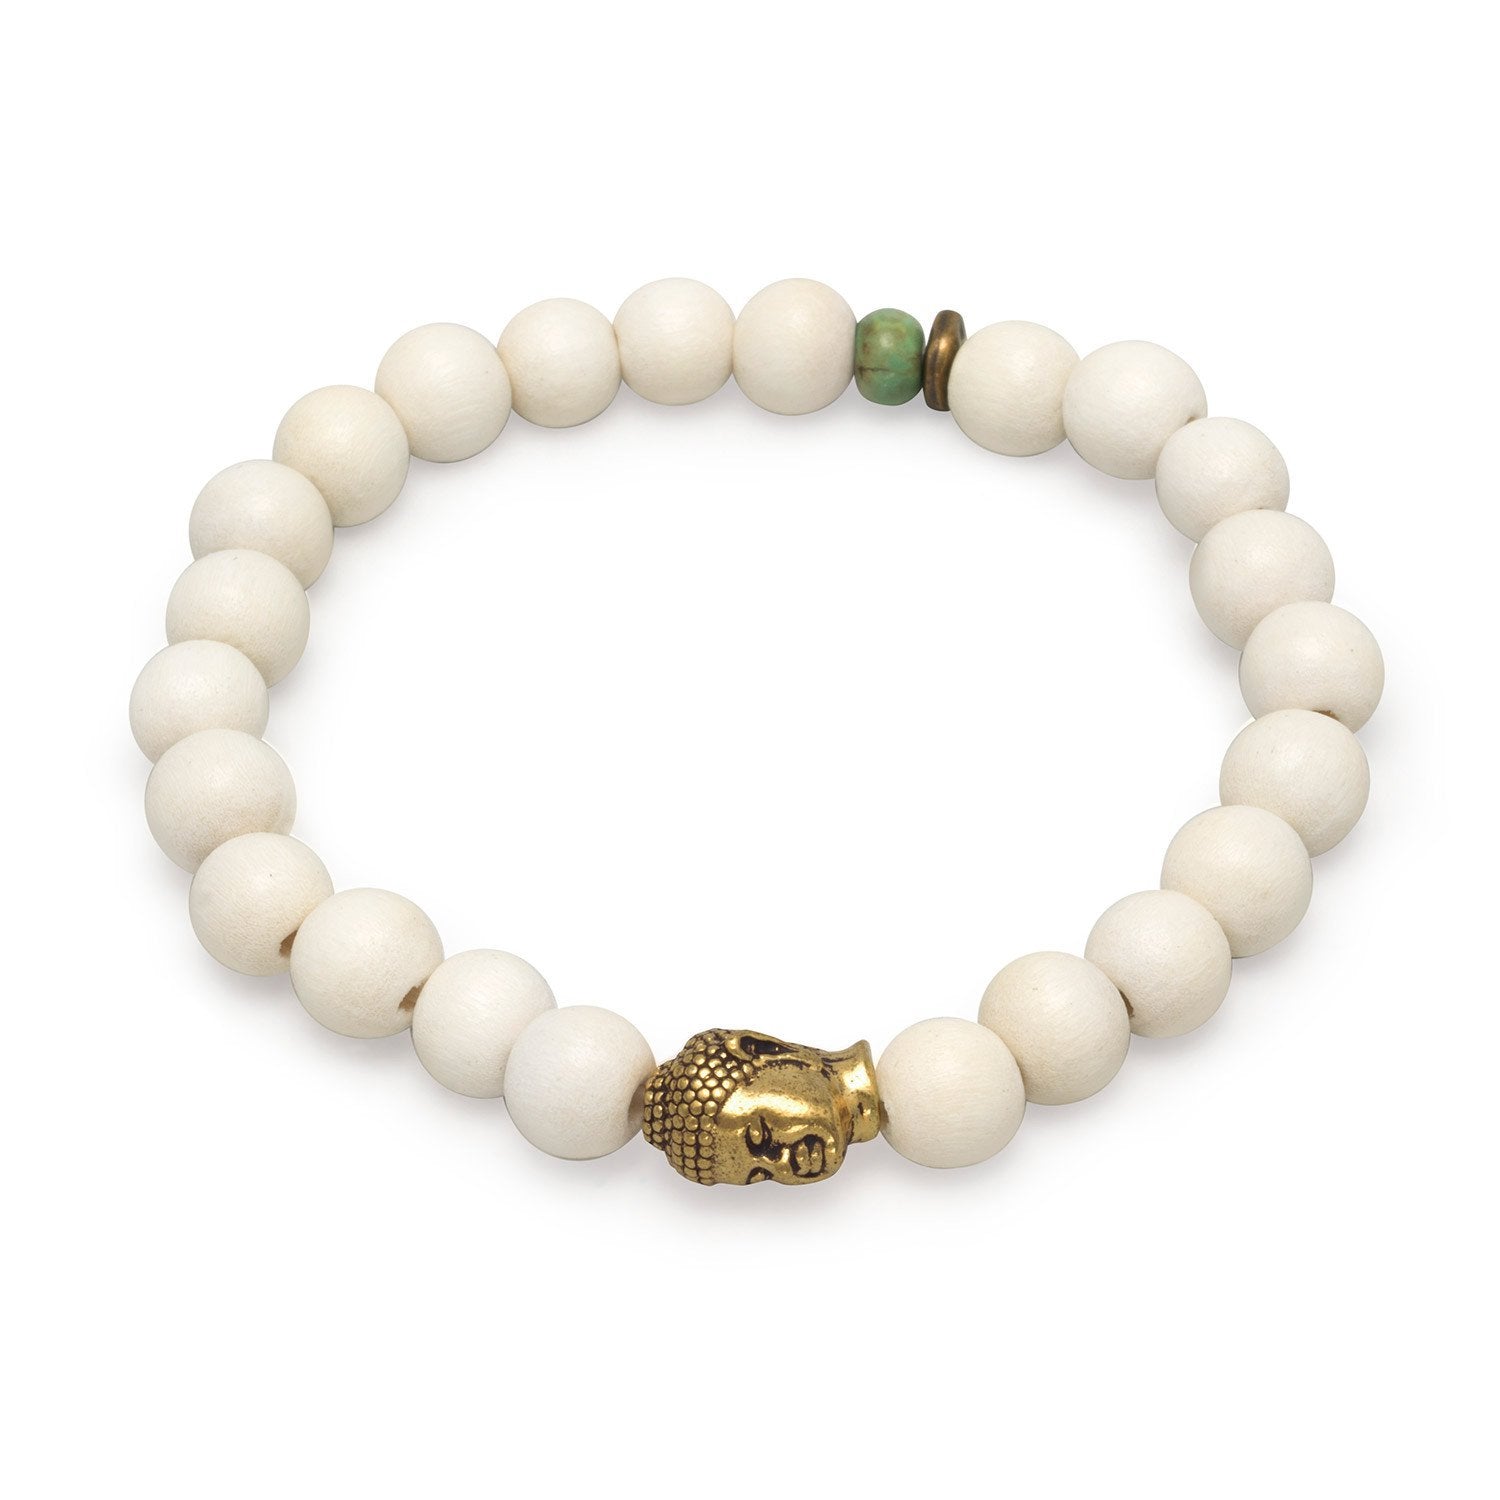 8" Fashion Stretch Bracelet with Buddha Bead - Joyeria Lady